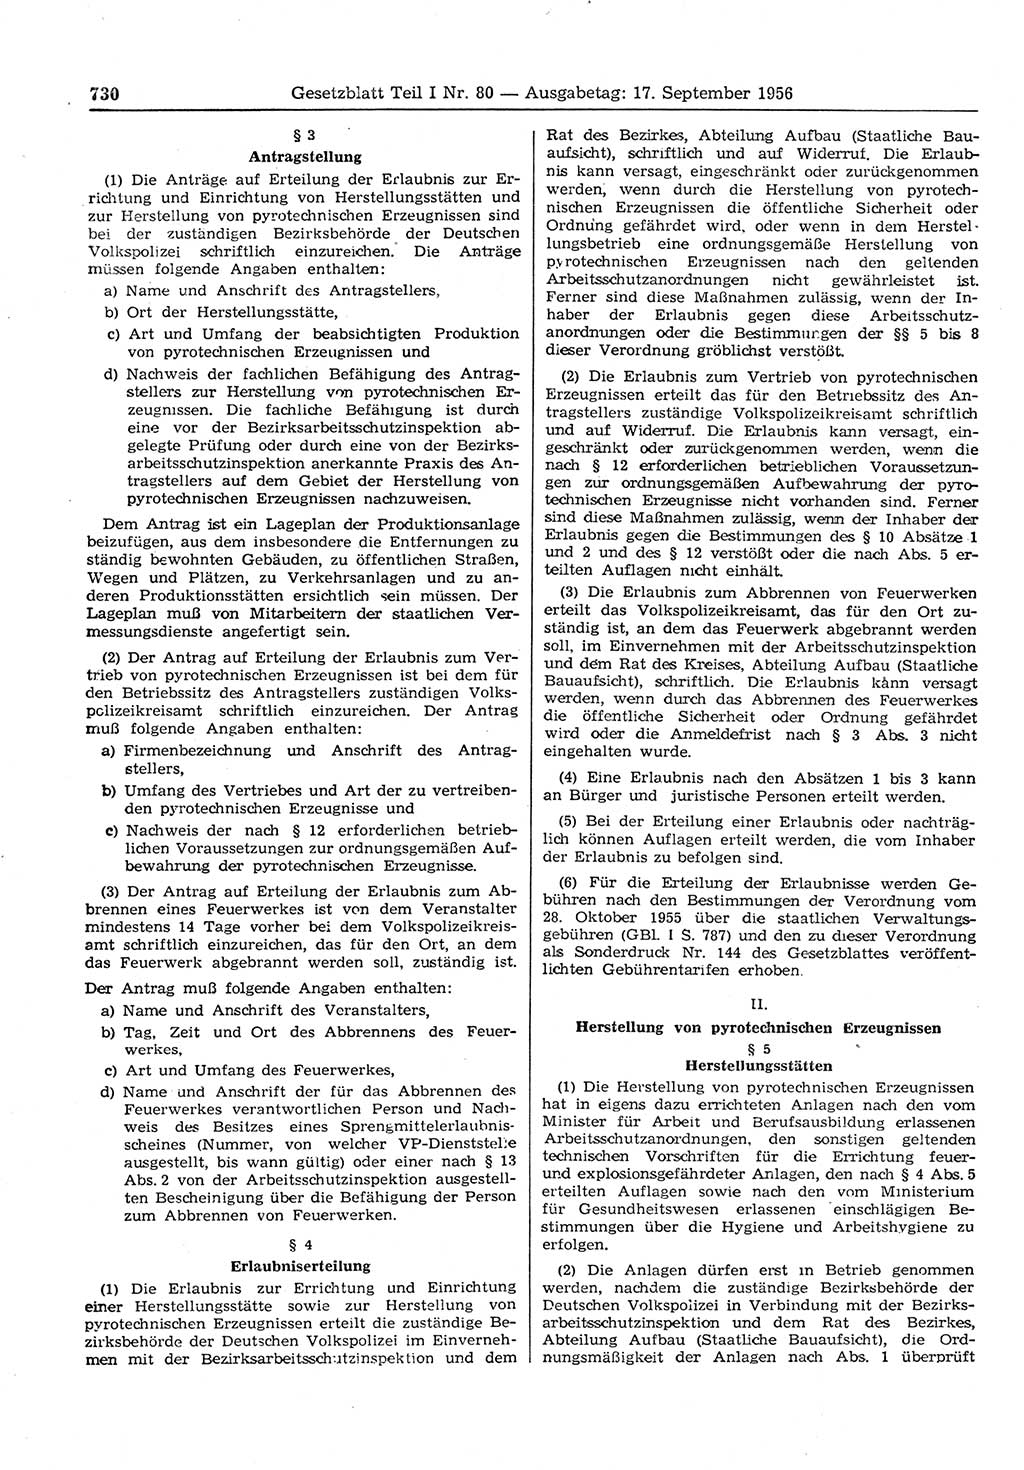 Gesetzblatt (GBl.) der Deutschen Demokratischen Republik (DDR) Teil Ⅰ 1956, Seite 730 (GBl. DDR Ⅰ 1956, S. 730)